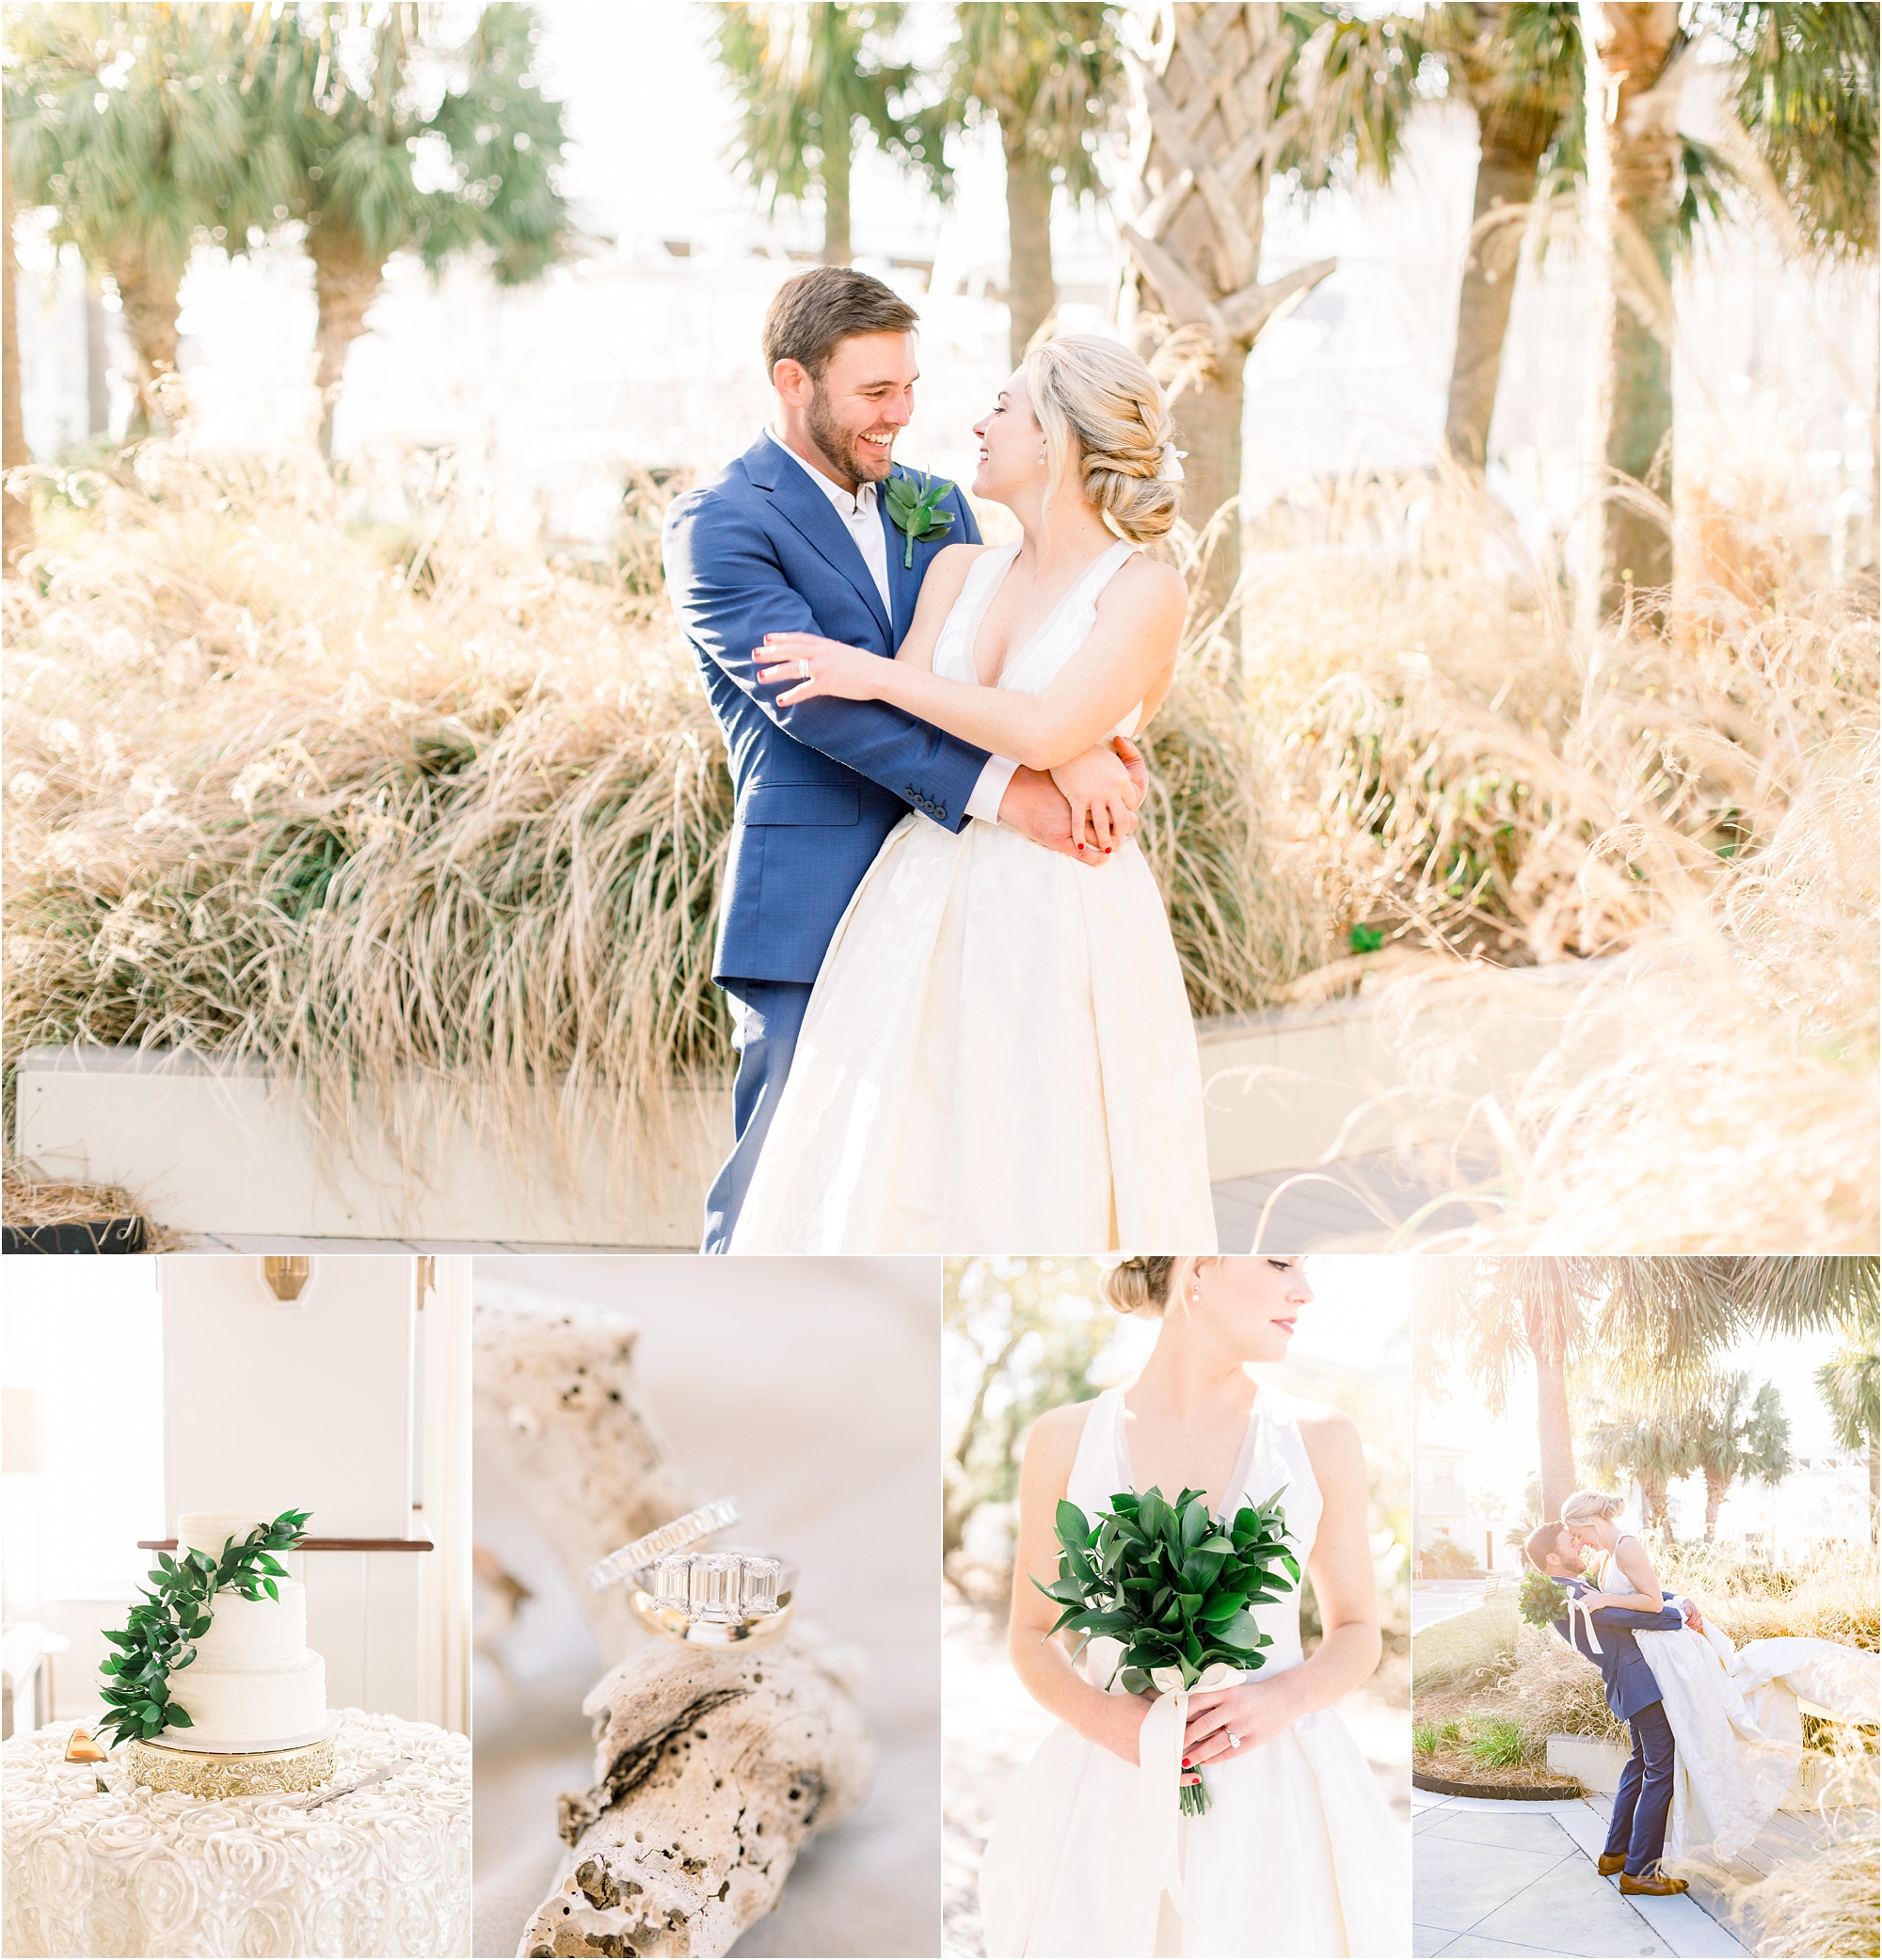 Fishers Orange Beach Alabama Wedding By Jennie Tewell